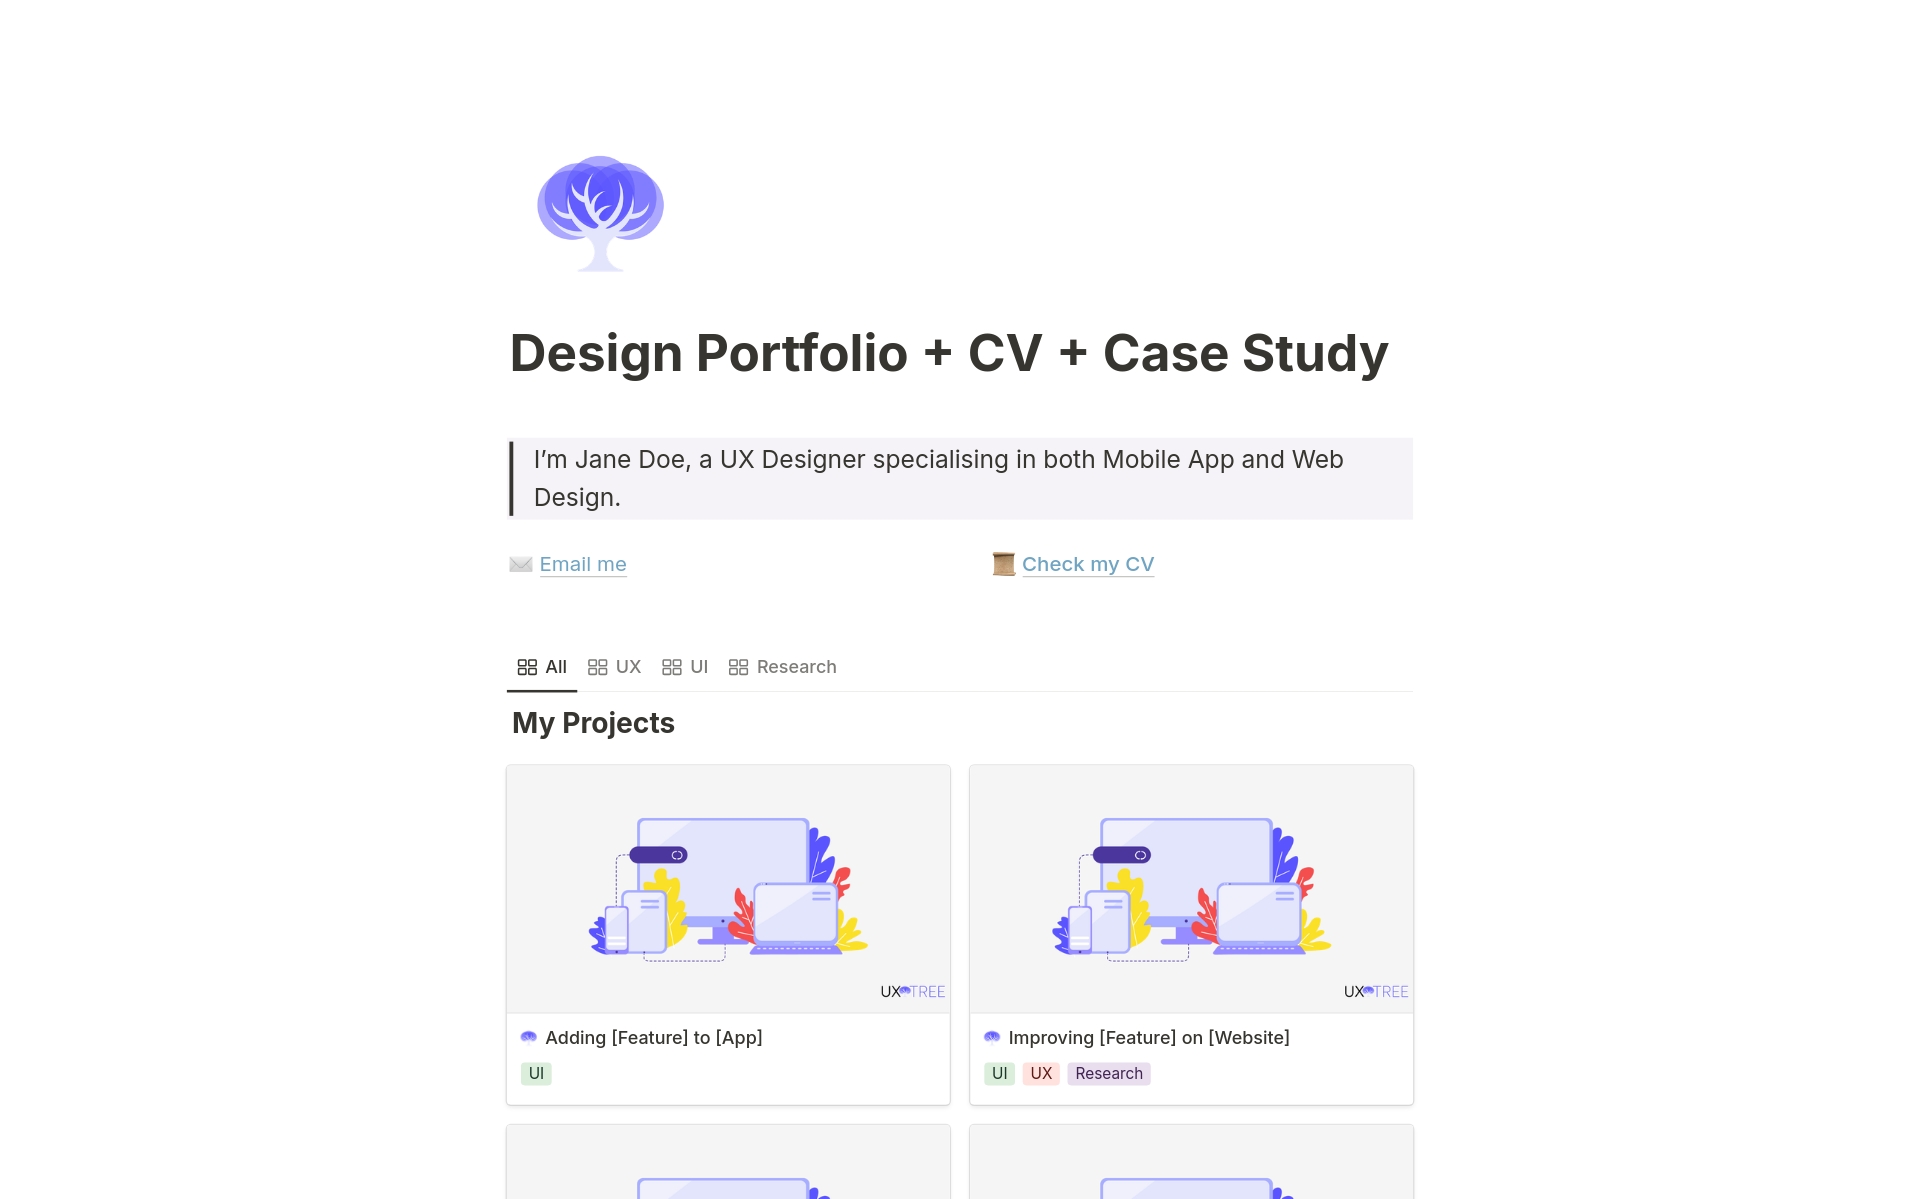 Vista previa de una plantilla para Design Portfolio + CV + Case Study